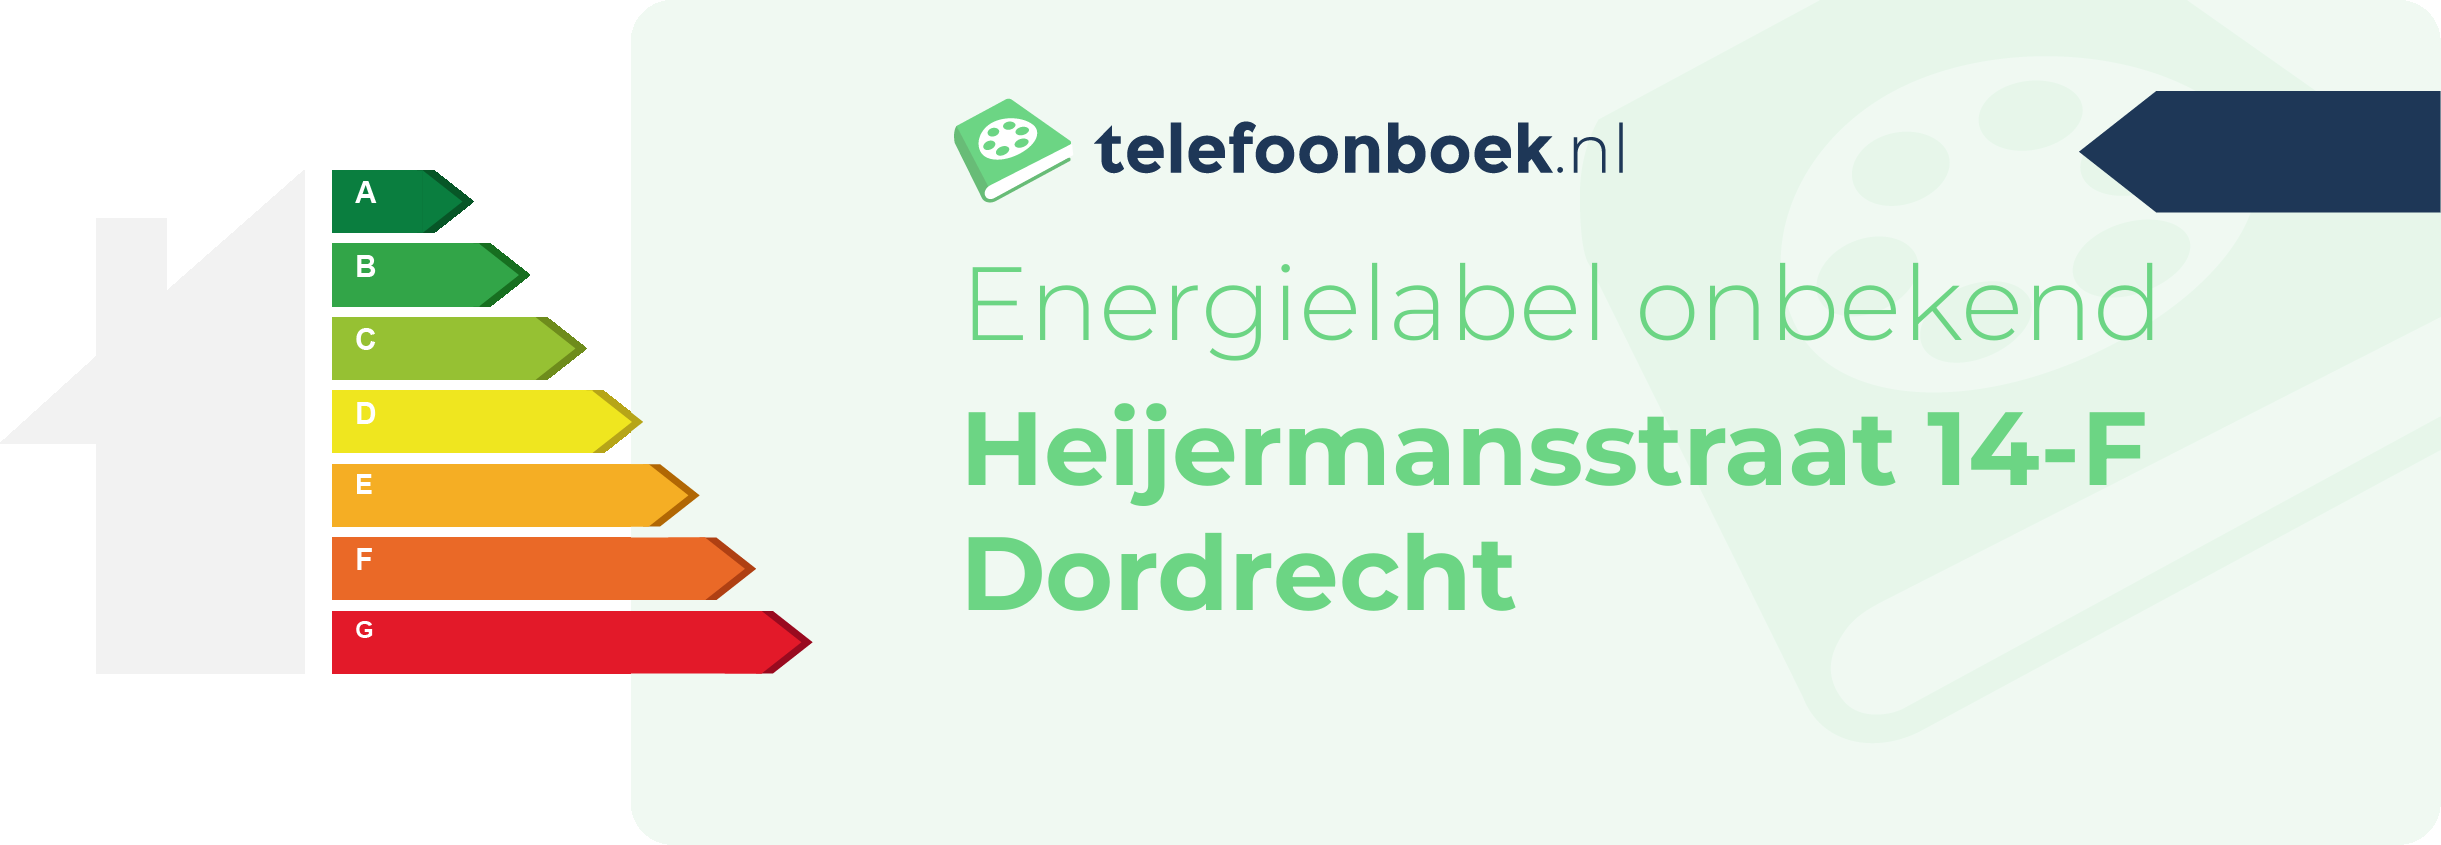 Energielabel Heijermansstraat 14-F Dordrecht